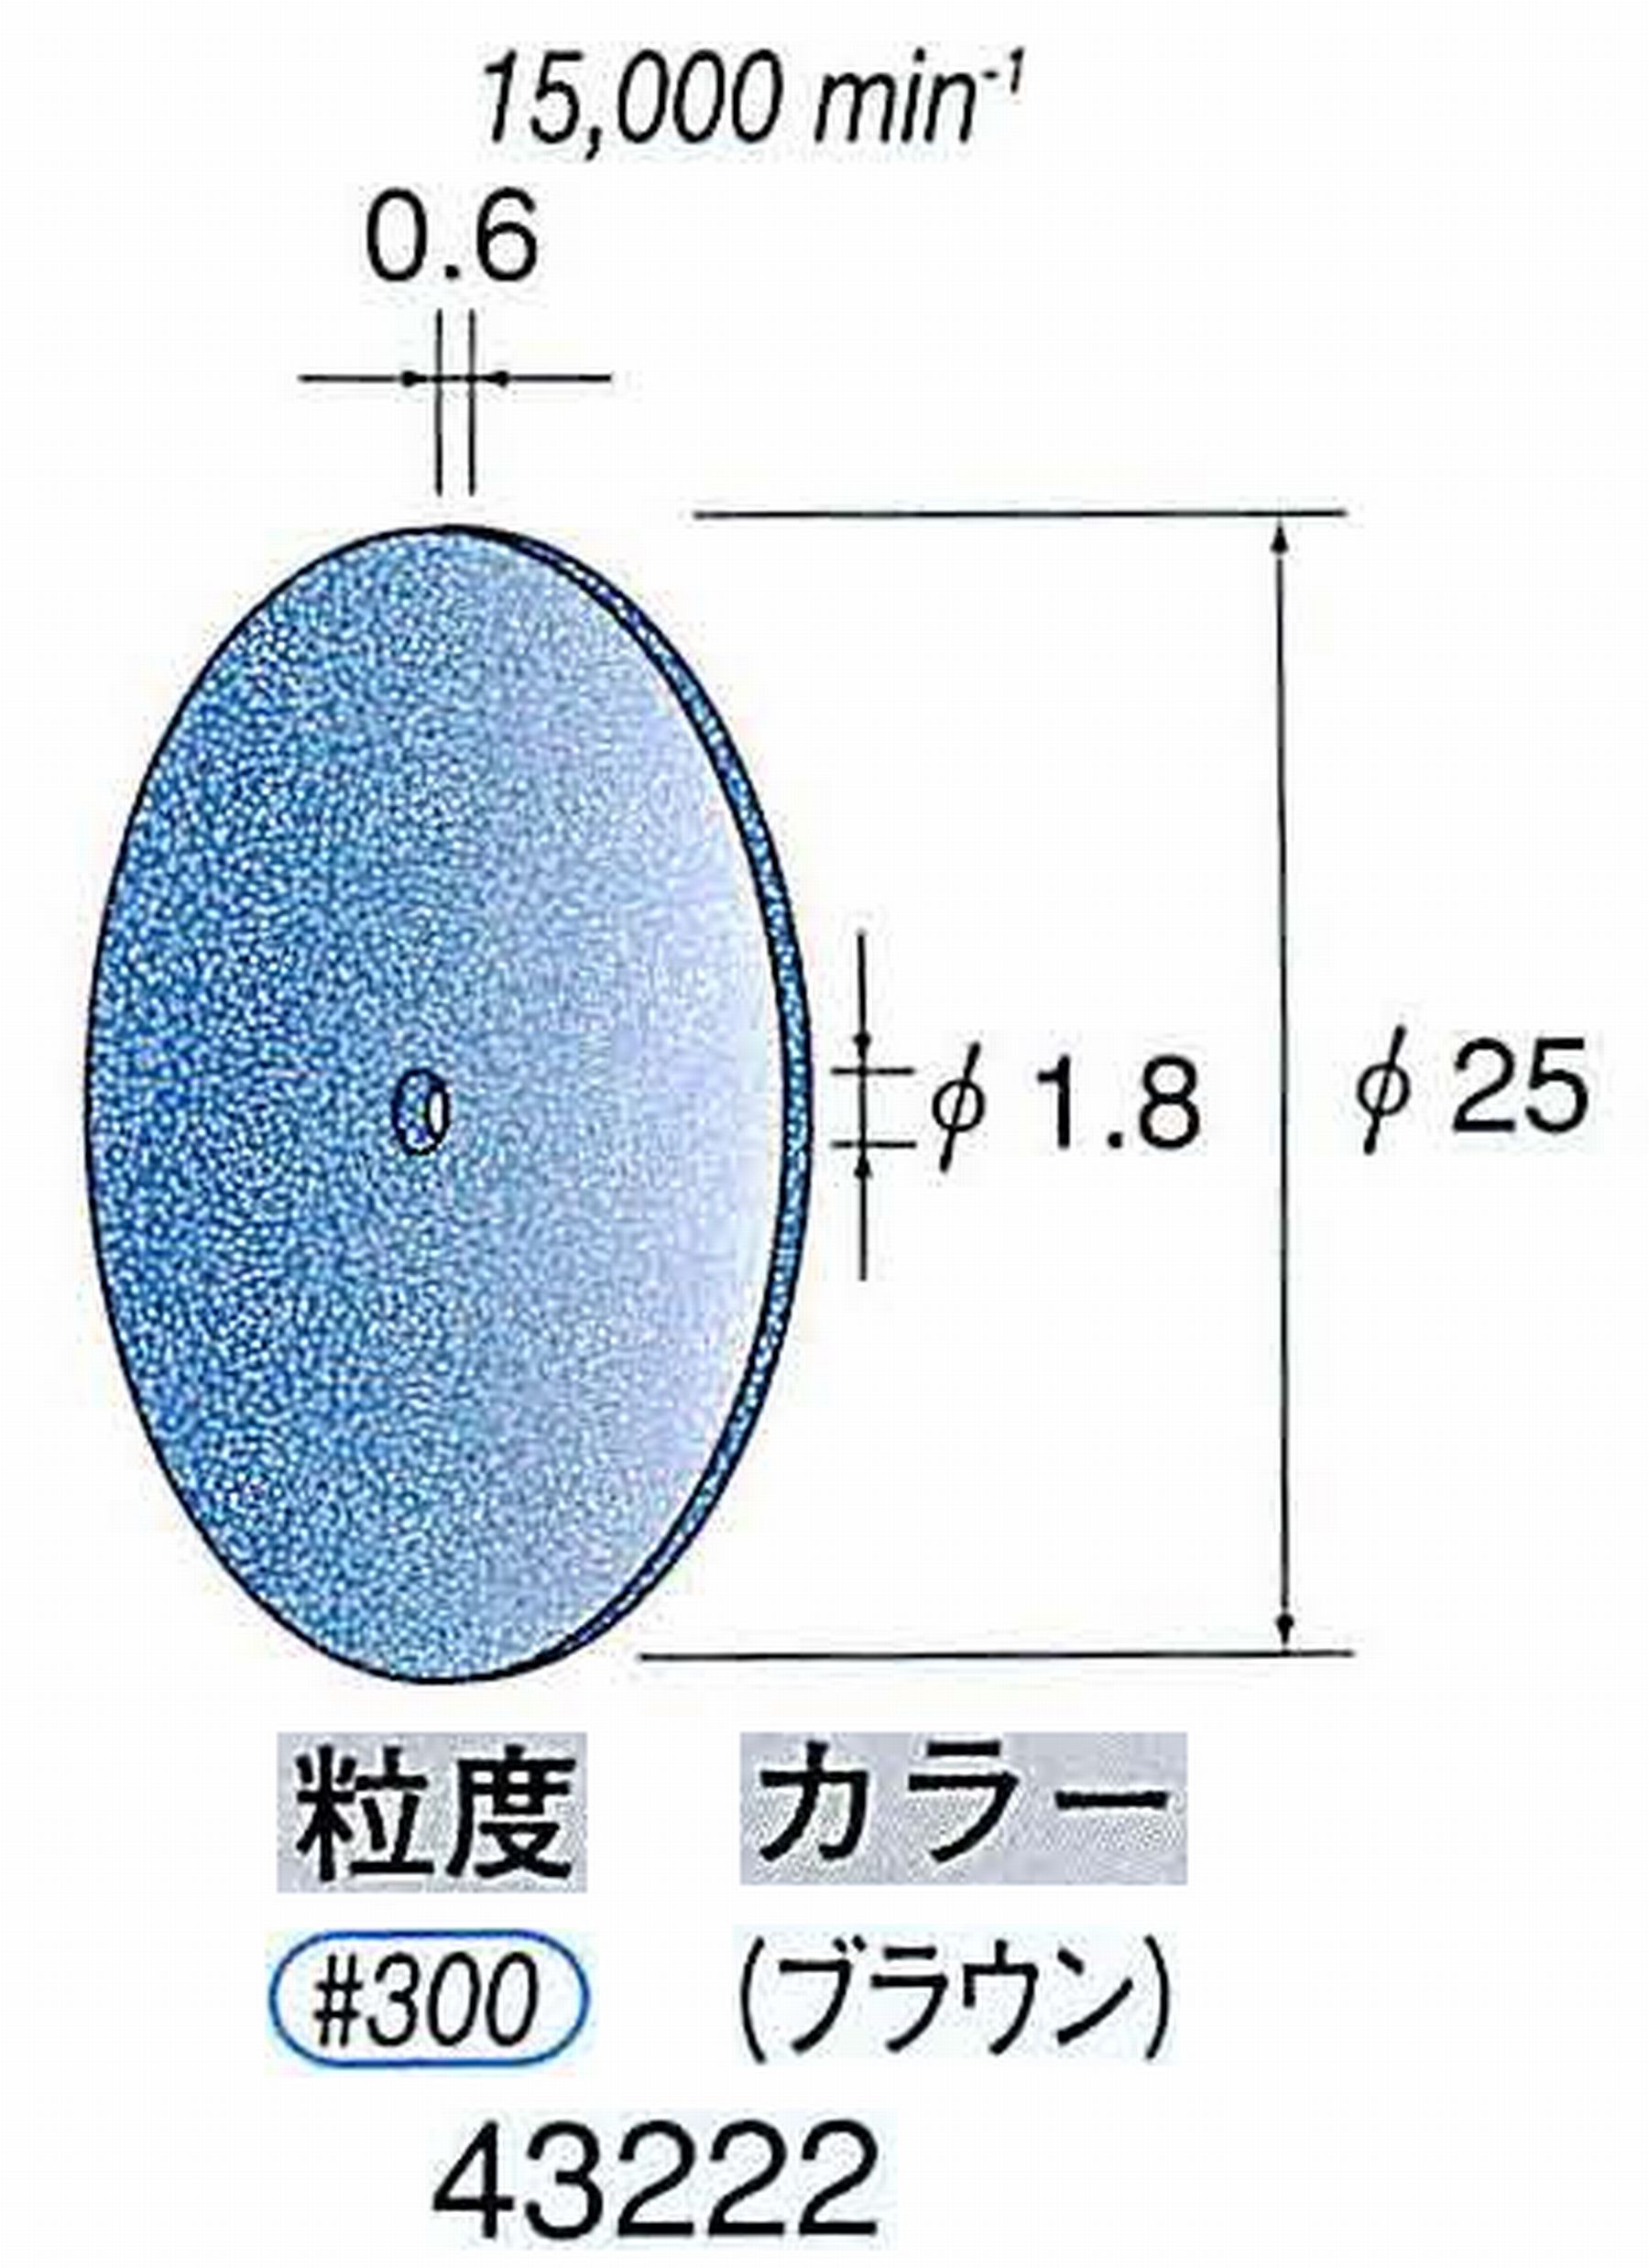 ナカニシ/NAKANISHI セラファイバー砥石ディスク(カラー ブラウン) 43222